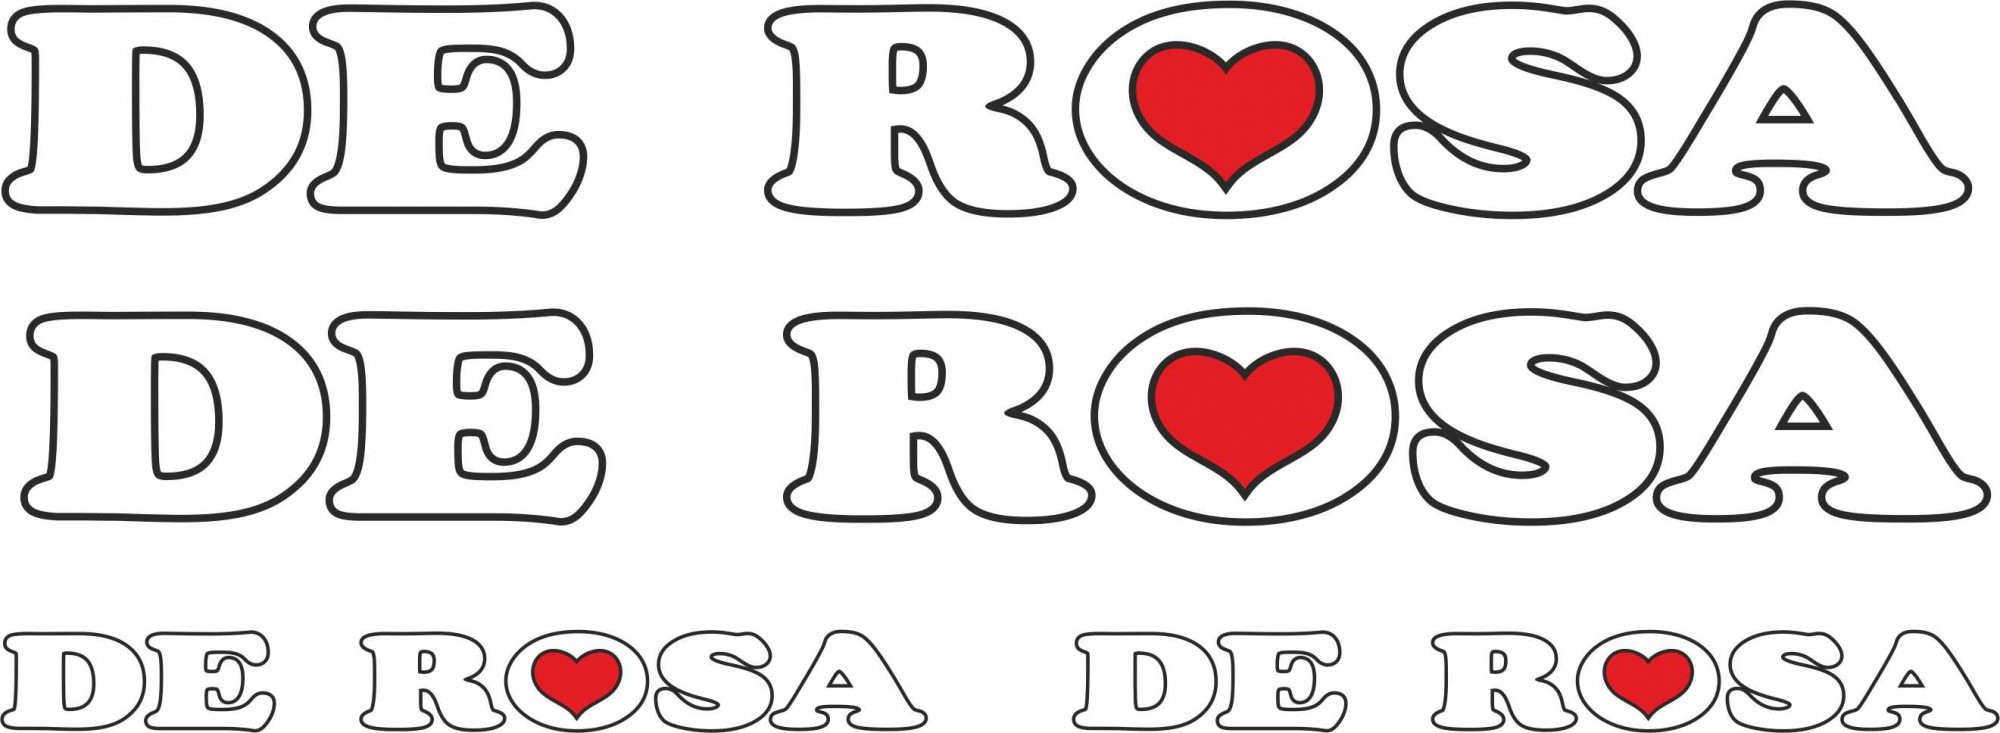 Decal 0537 Ugo De Rosa Signature Bicycle Sticker Transfer 